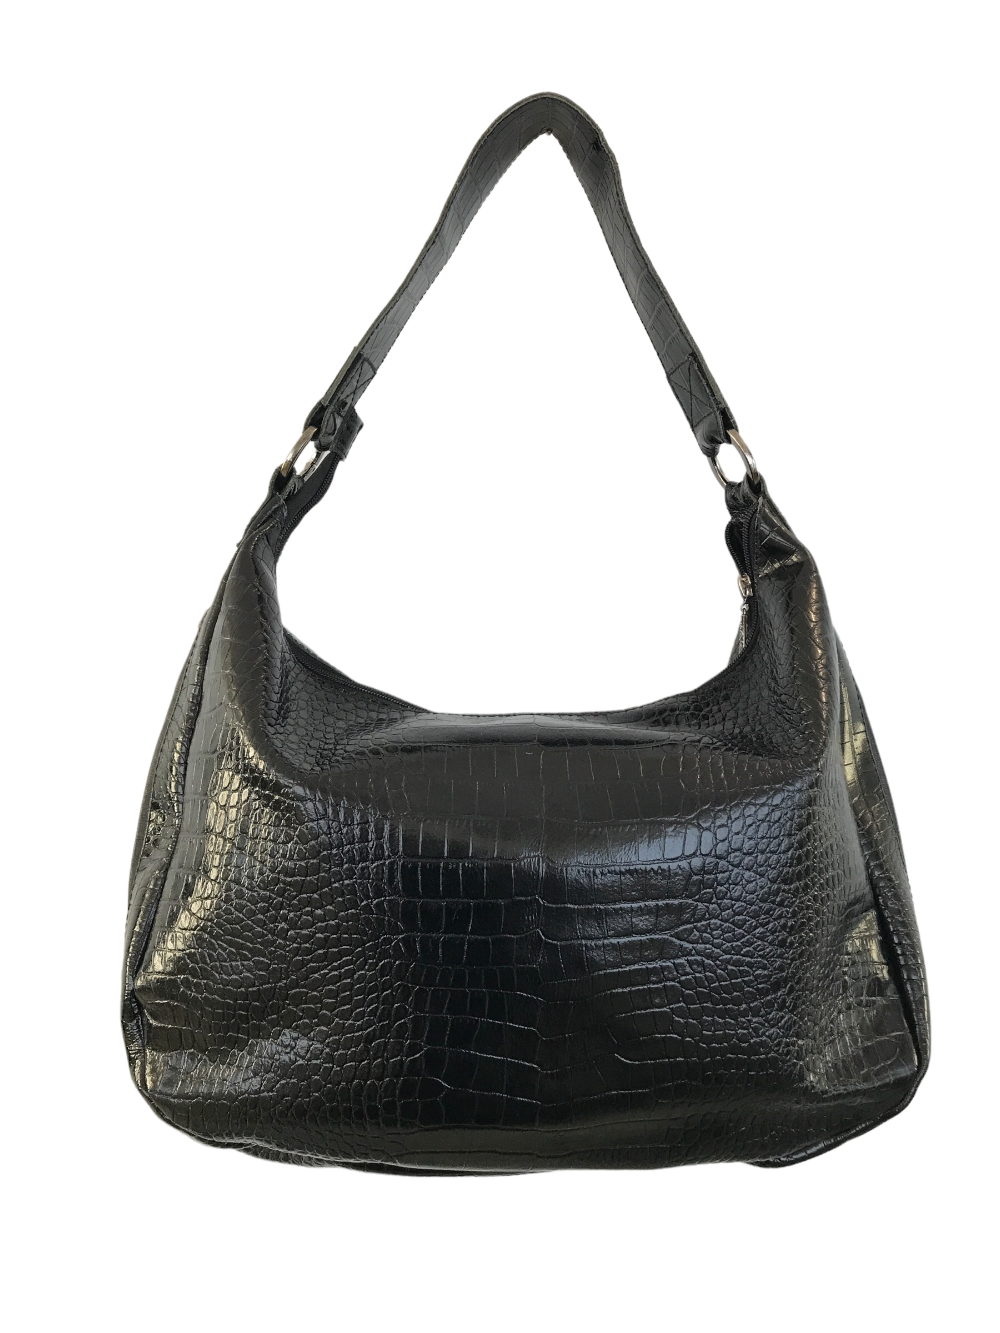 картинка кожаные  "Италия-03" - Женская кожаная сумка. черный крокодил, тиснение, лак от Ирины Берзиной